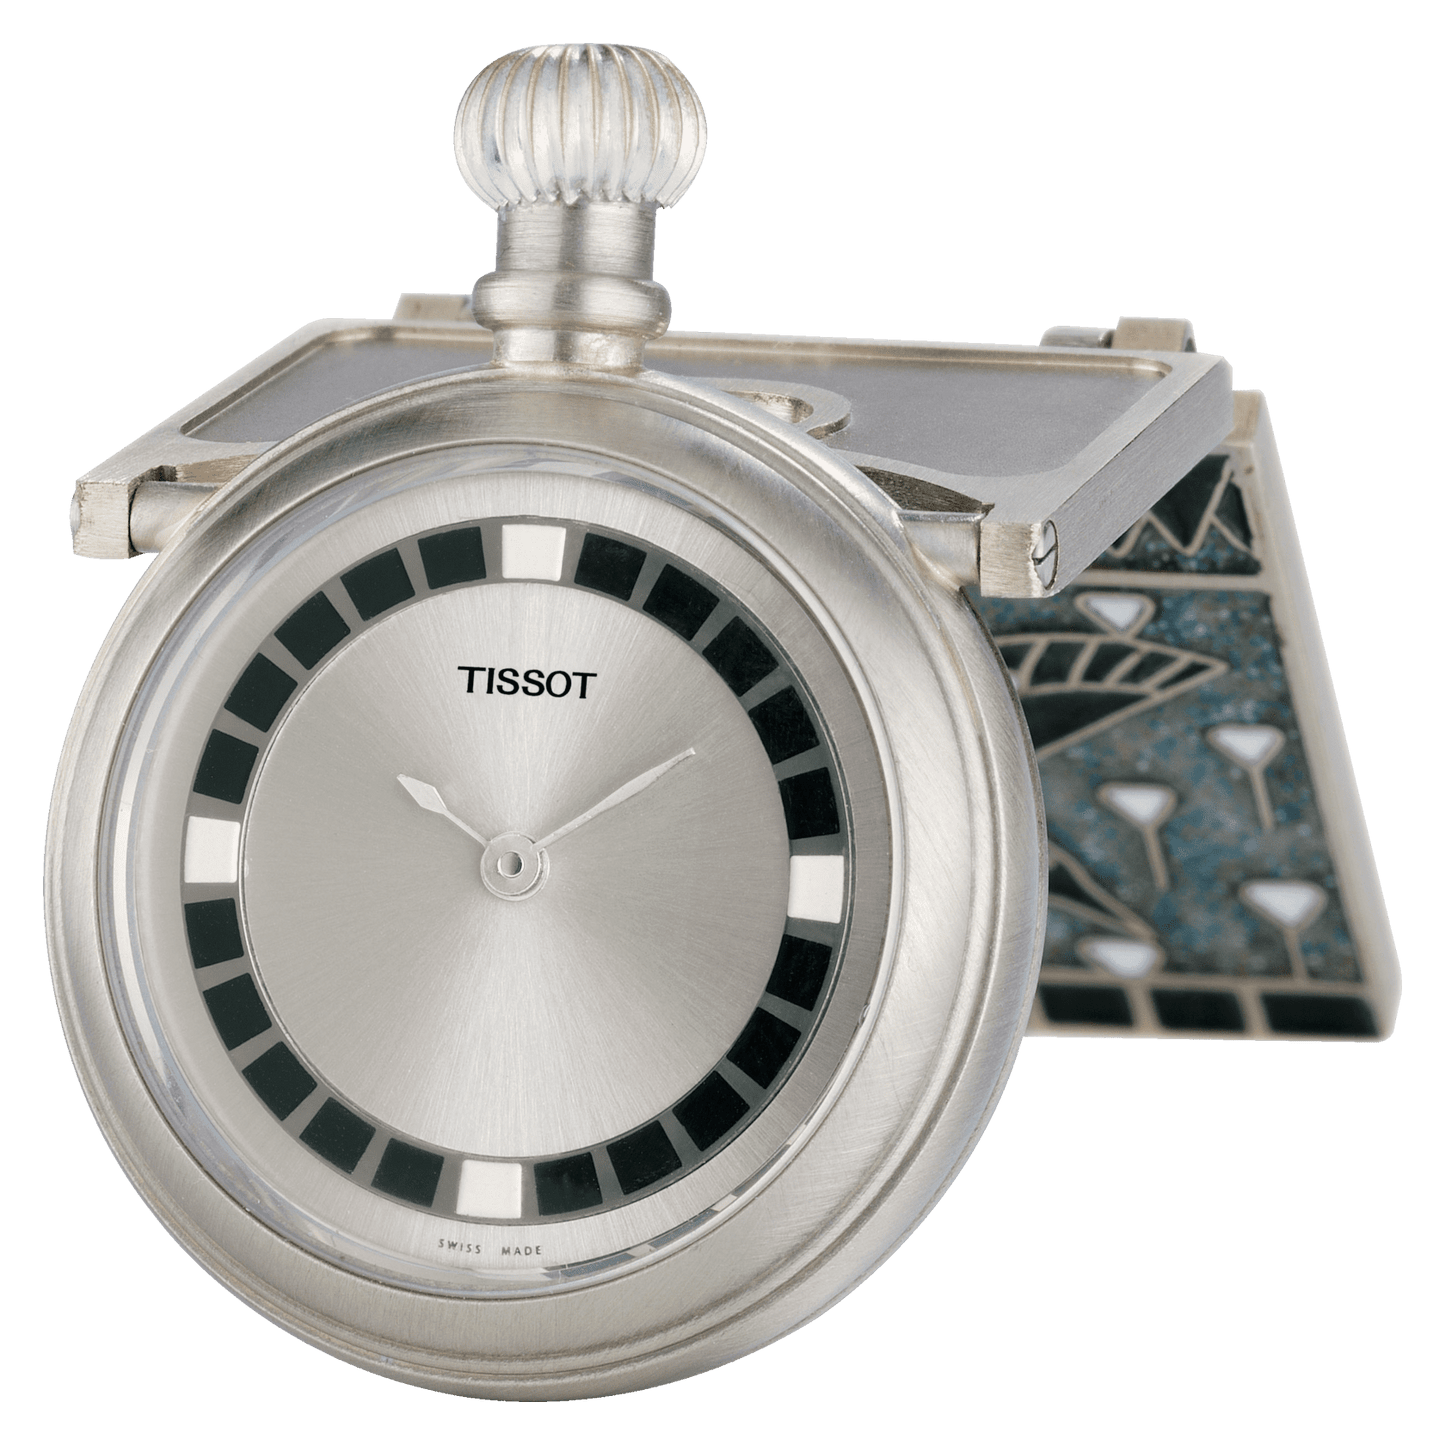 Tissot Specials Mechanical